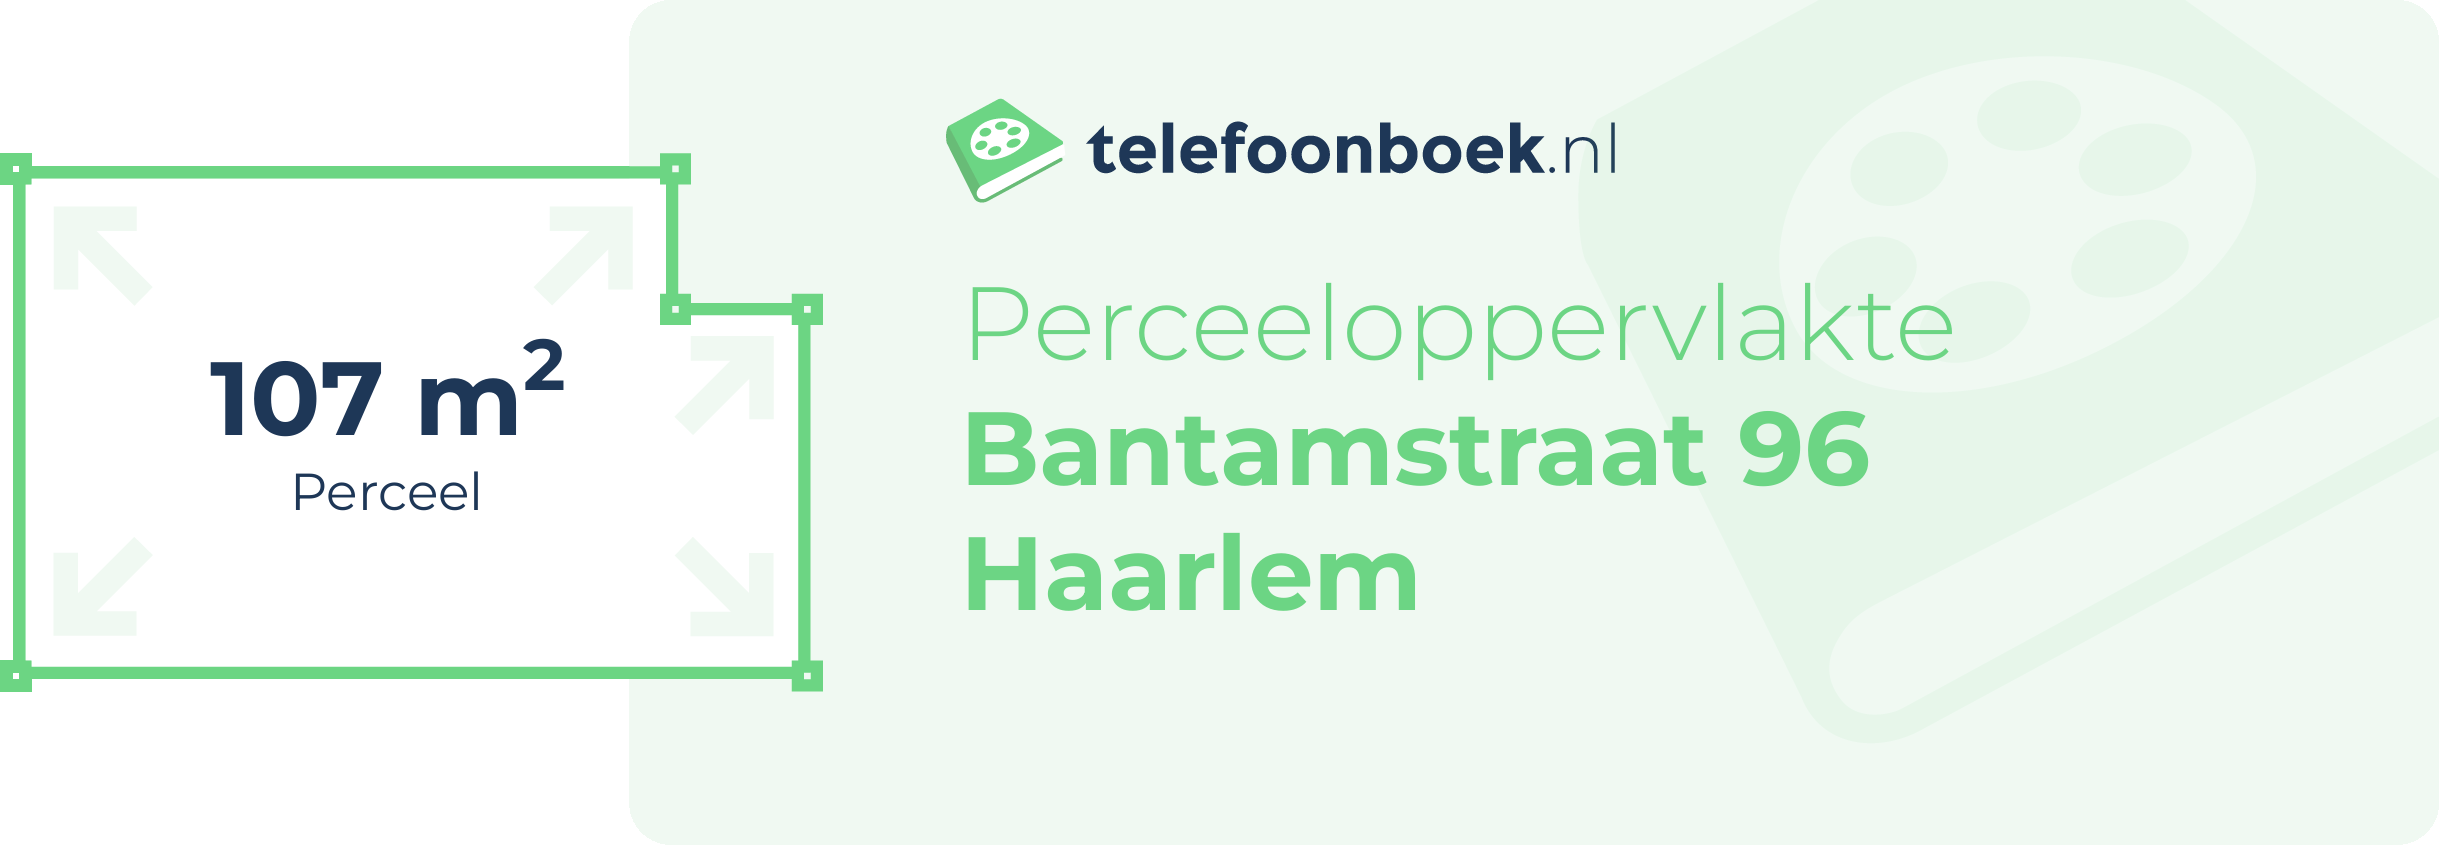 Perceeloppervlakte Bantamstraat 96 Haarlem